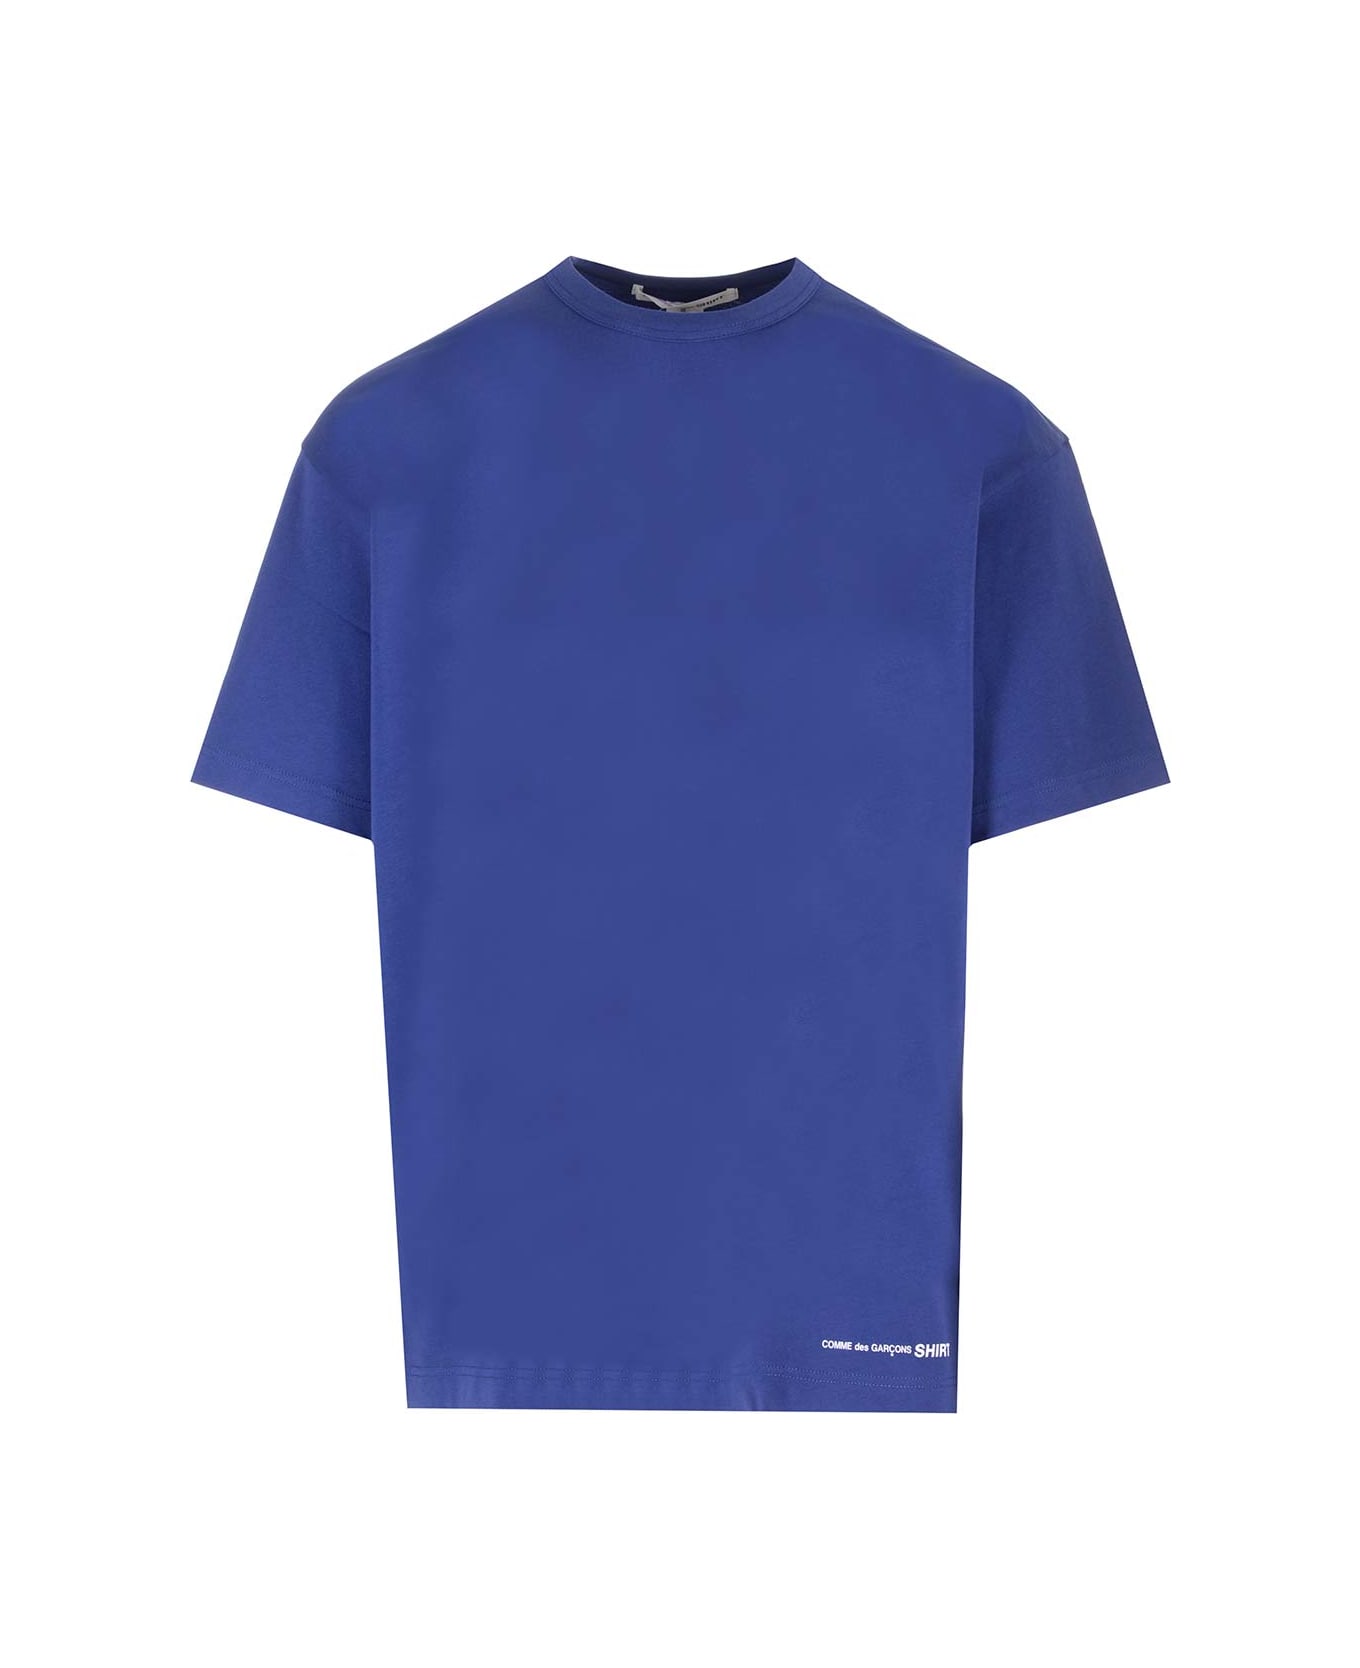 Comme des Garçons Shirt Electric Blue Over T-shirt - Navy